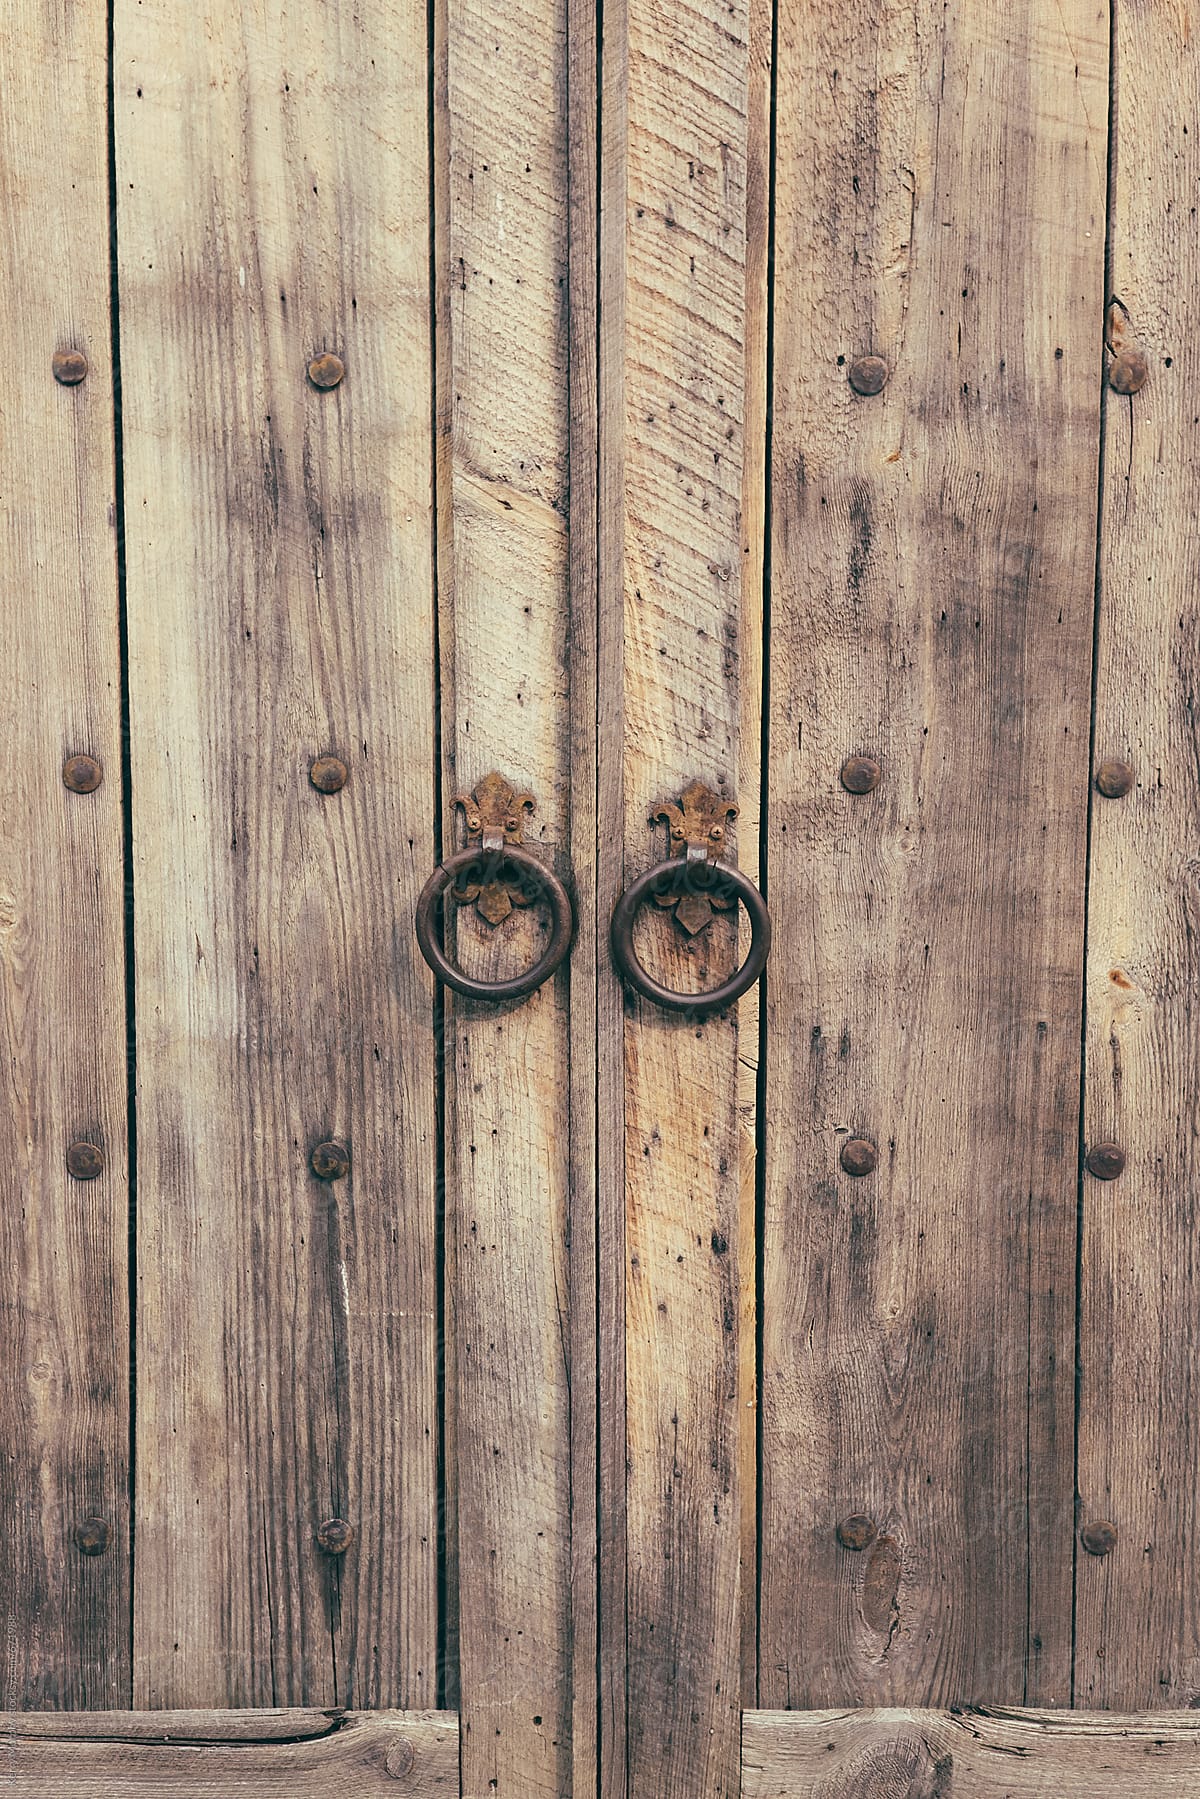 Weathered rustic wood door with metal handles